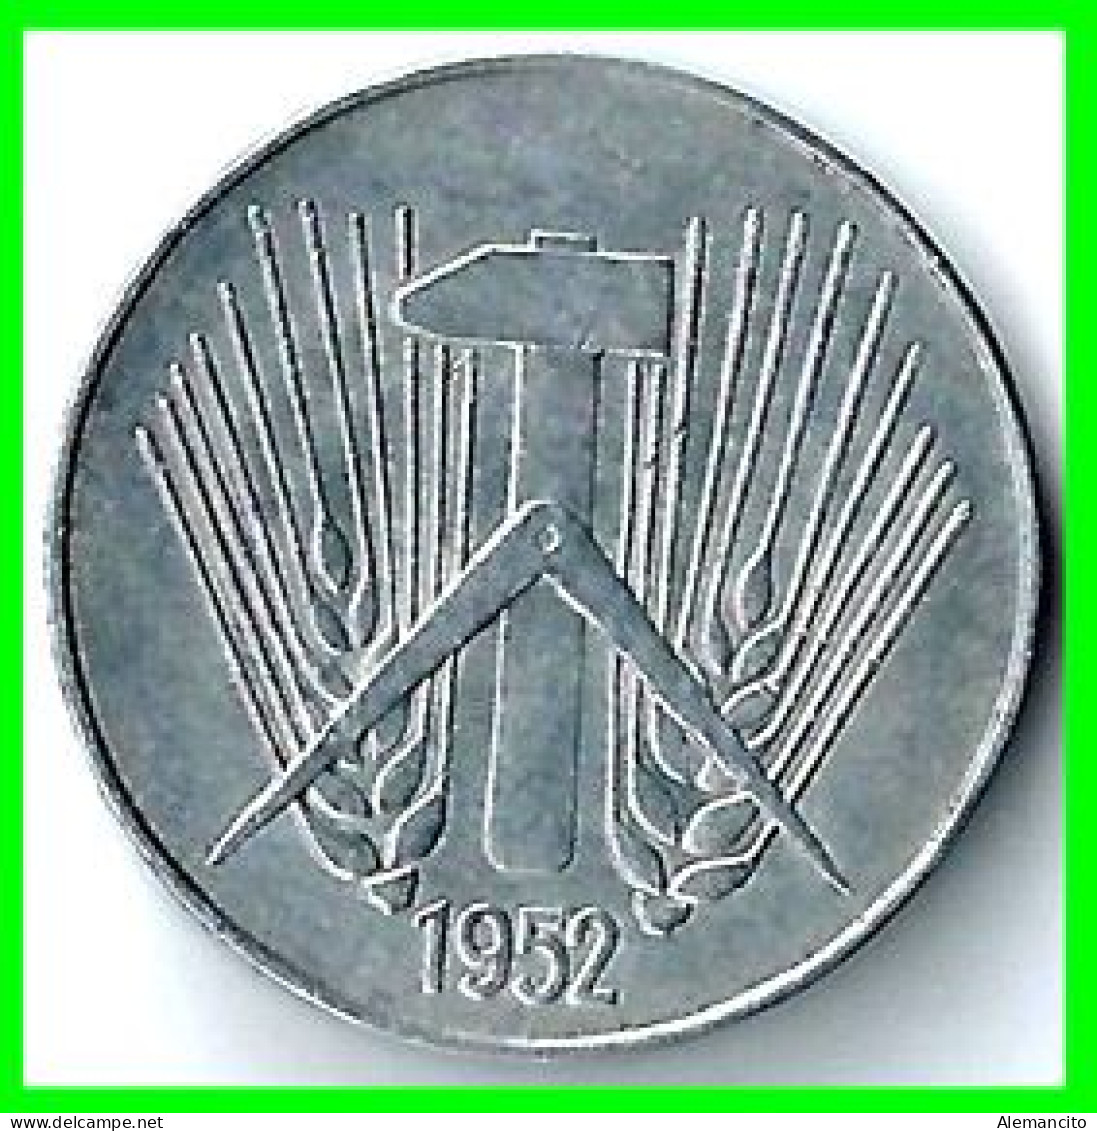 REPUBLICA DEMOCRATICA DE ALEMANIA ( DDR )  MONEDA DE 10 PFENNING AÑO - 1952 - CECA - A - MONEDA DE ALUMINIO CIRCULADA - 10 Pfennig